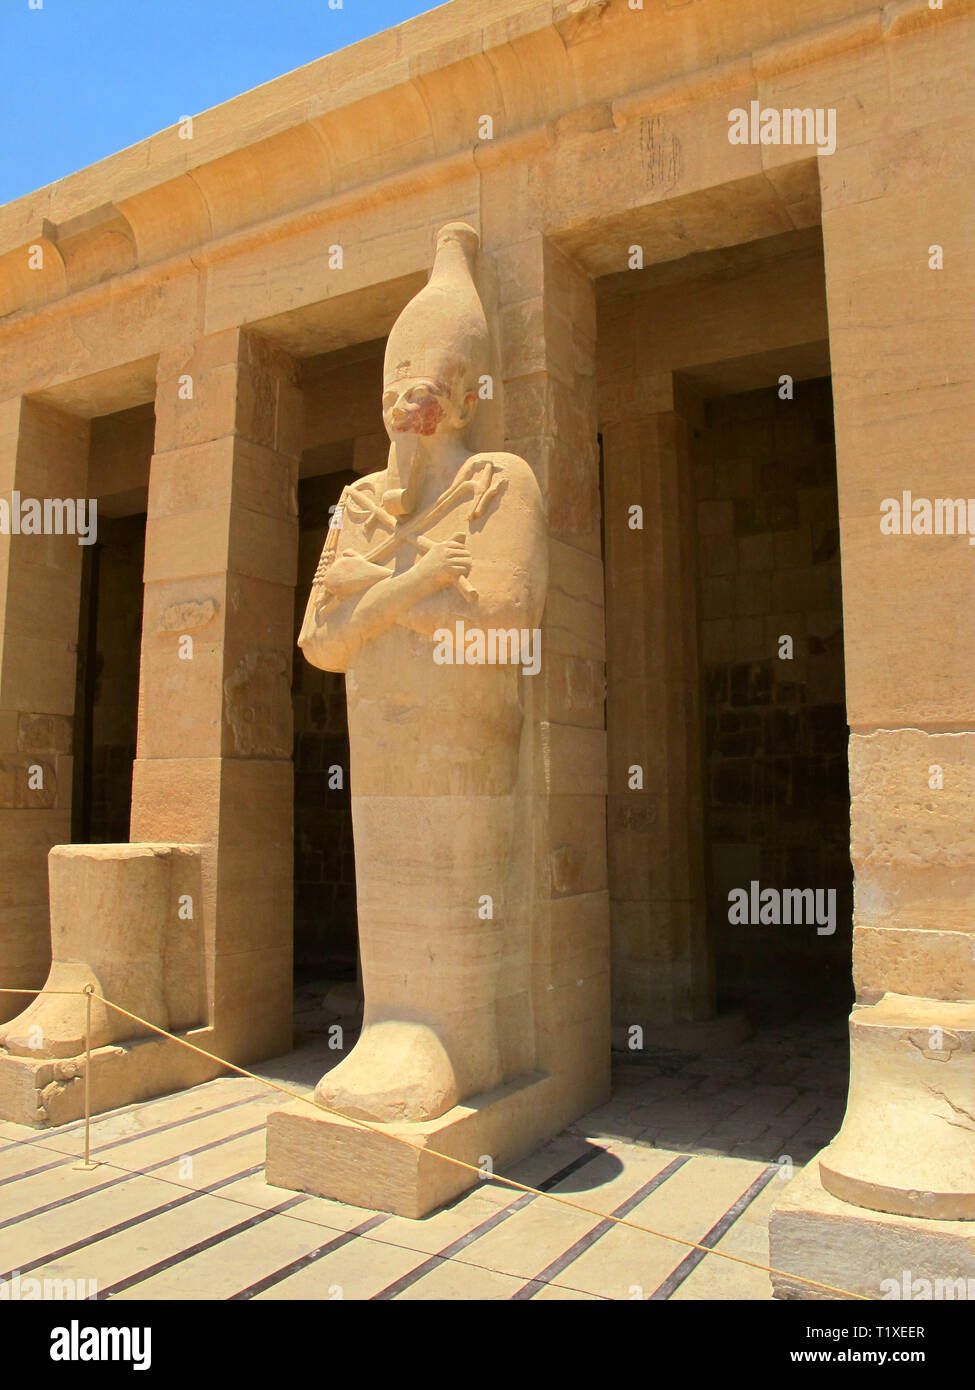 Ägypten, Luxor - 26.07.2010: Tempel der Königin Hatshepsup. Historische Monumente der Antike Sehenswürdigkeiten von Ägypten Luxor Stockfoto